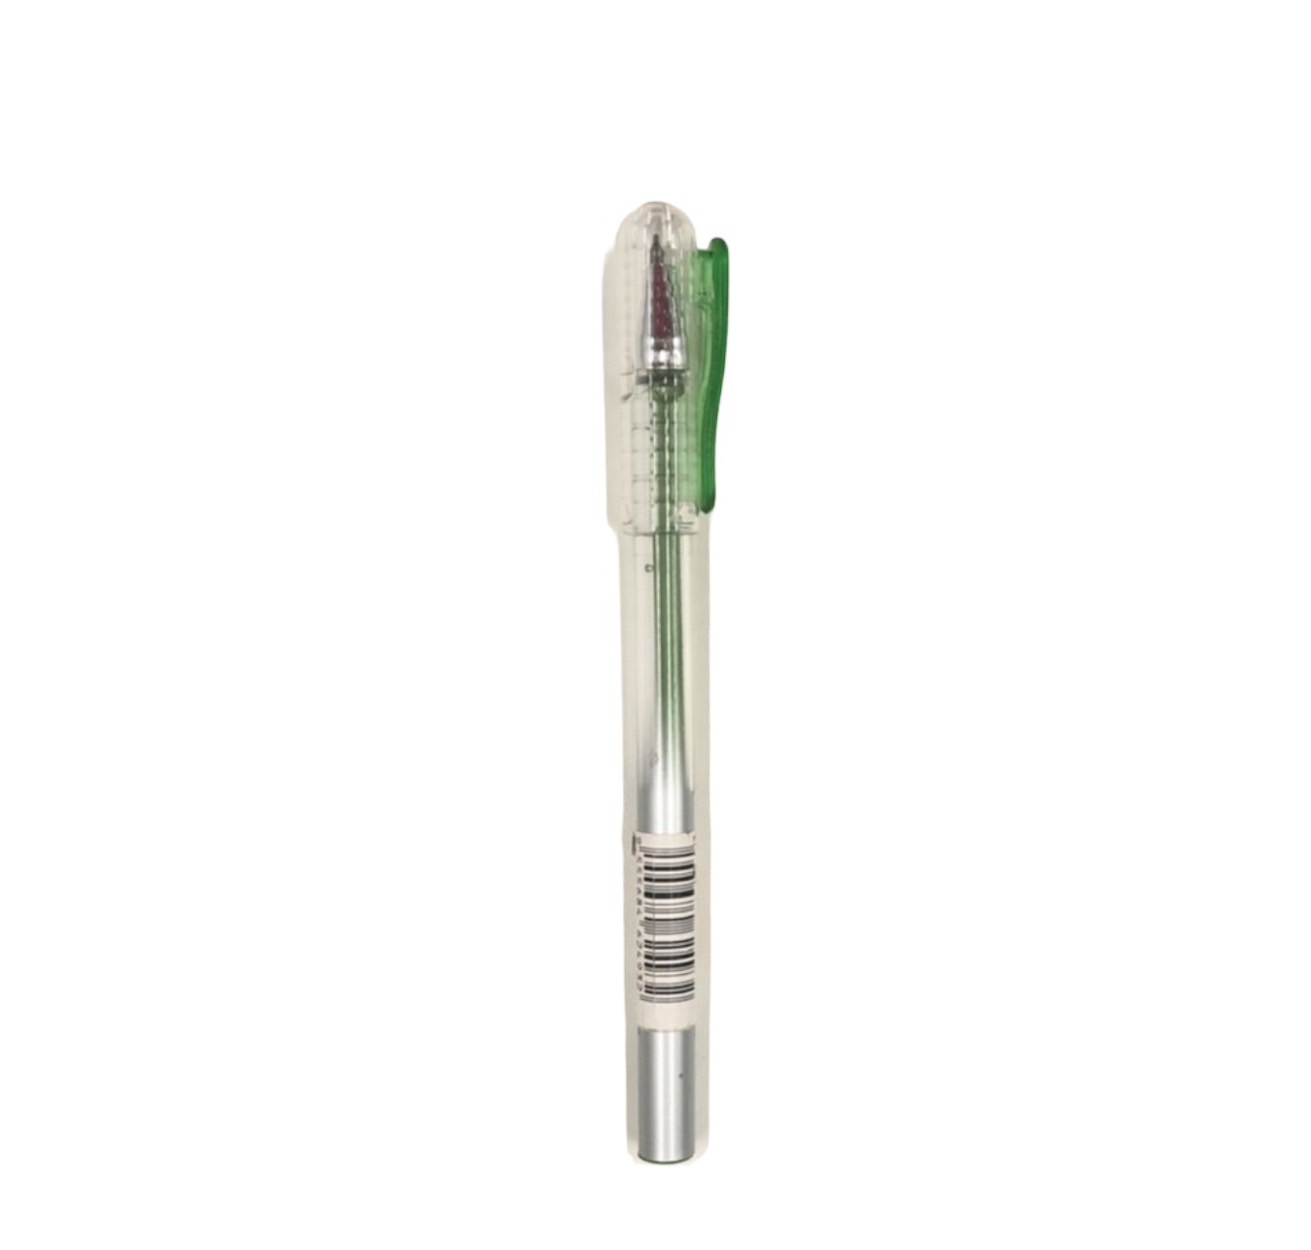 ปากกาเจล เฟเบอร์คาสเทล#242662 สีเขียวอ่อน